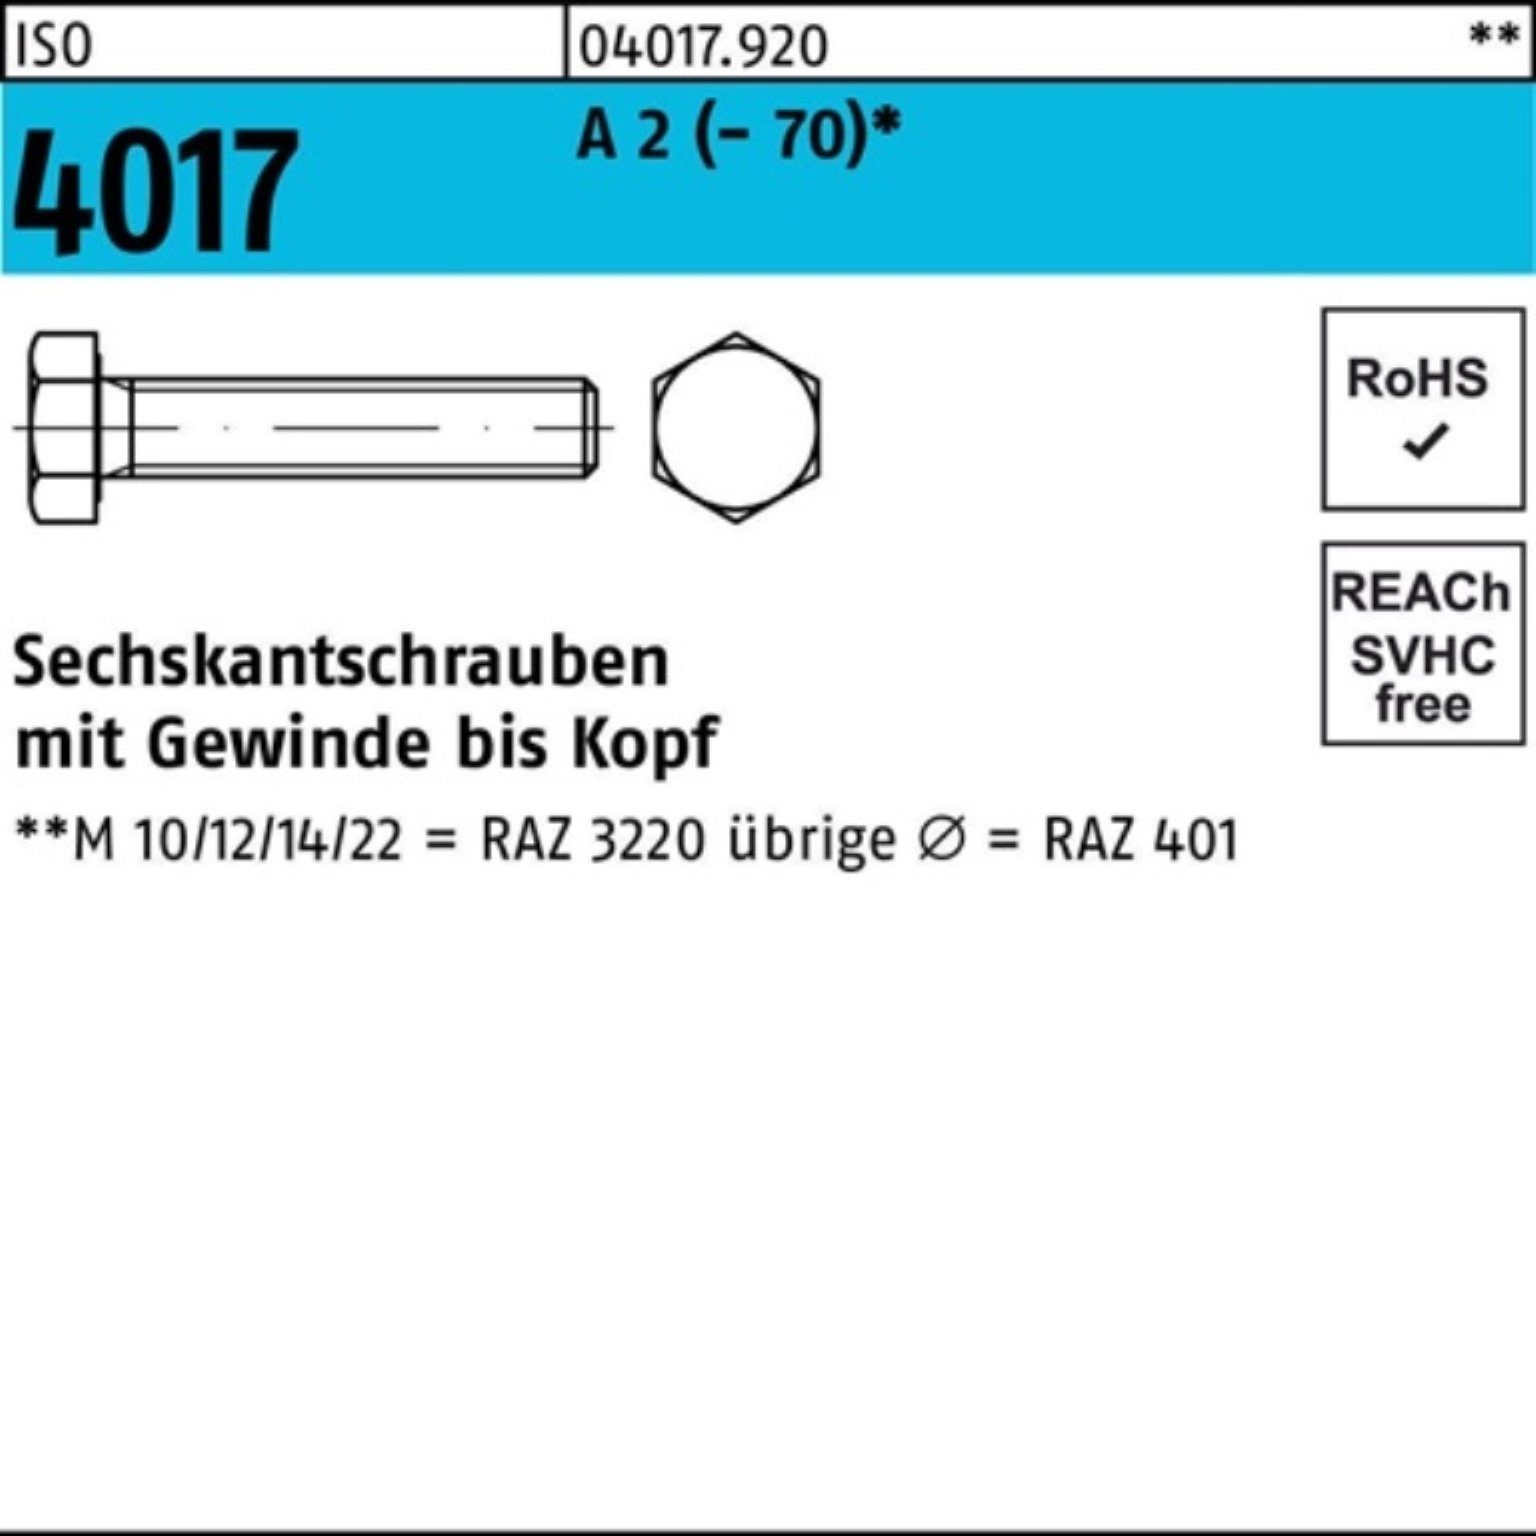 Bufab Sechskantschraube 100er Pack Sechskantschraube 25 ISO M8x Stück 4017 VG 2 A (70) 100